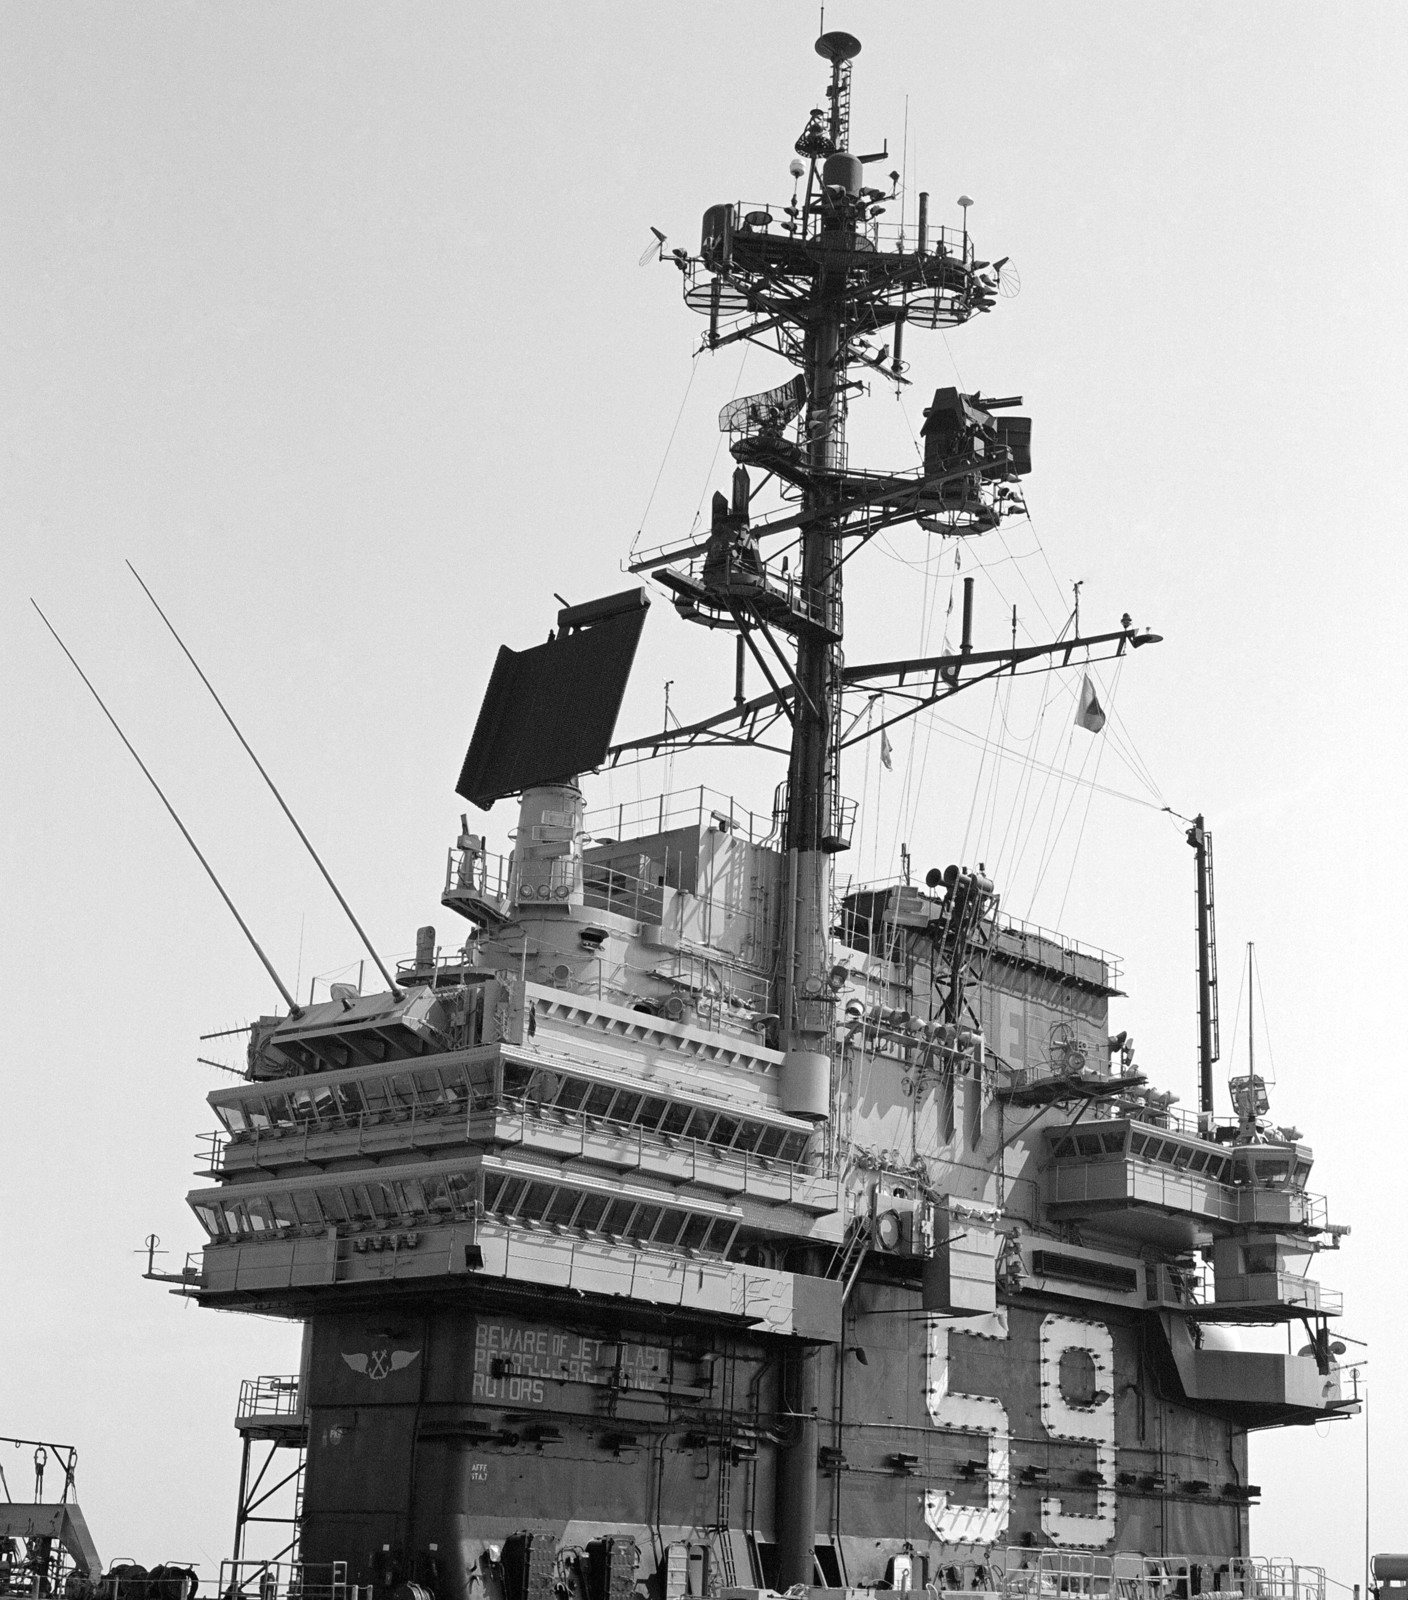 cv-59 uss forrestal aircraft carrier us navy mast radar antenna mayport 94